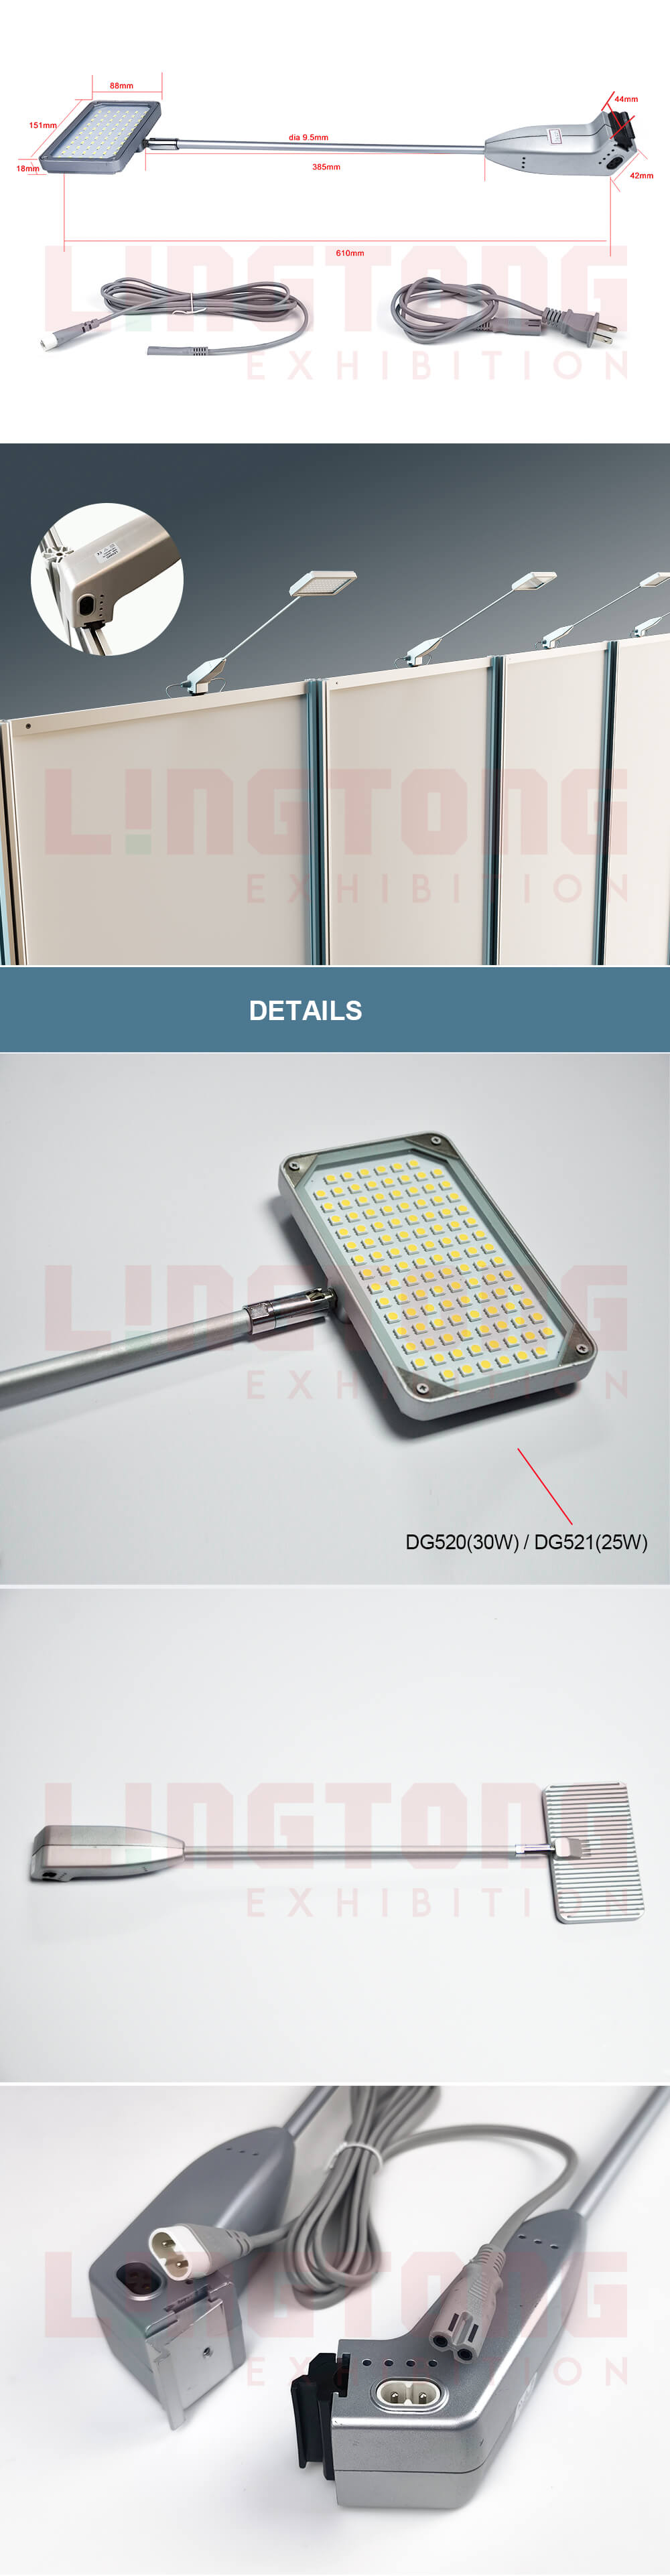 DG520_led_arm_lamp_spot_light-2_02.jpg